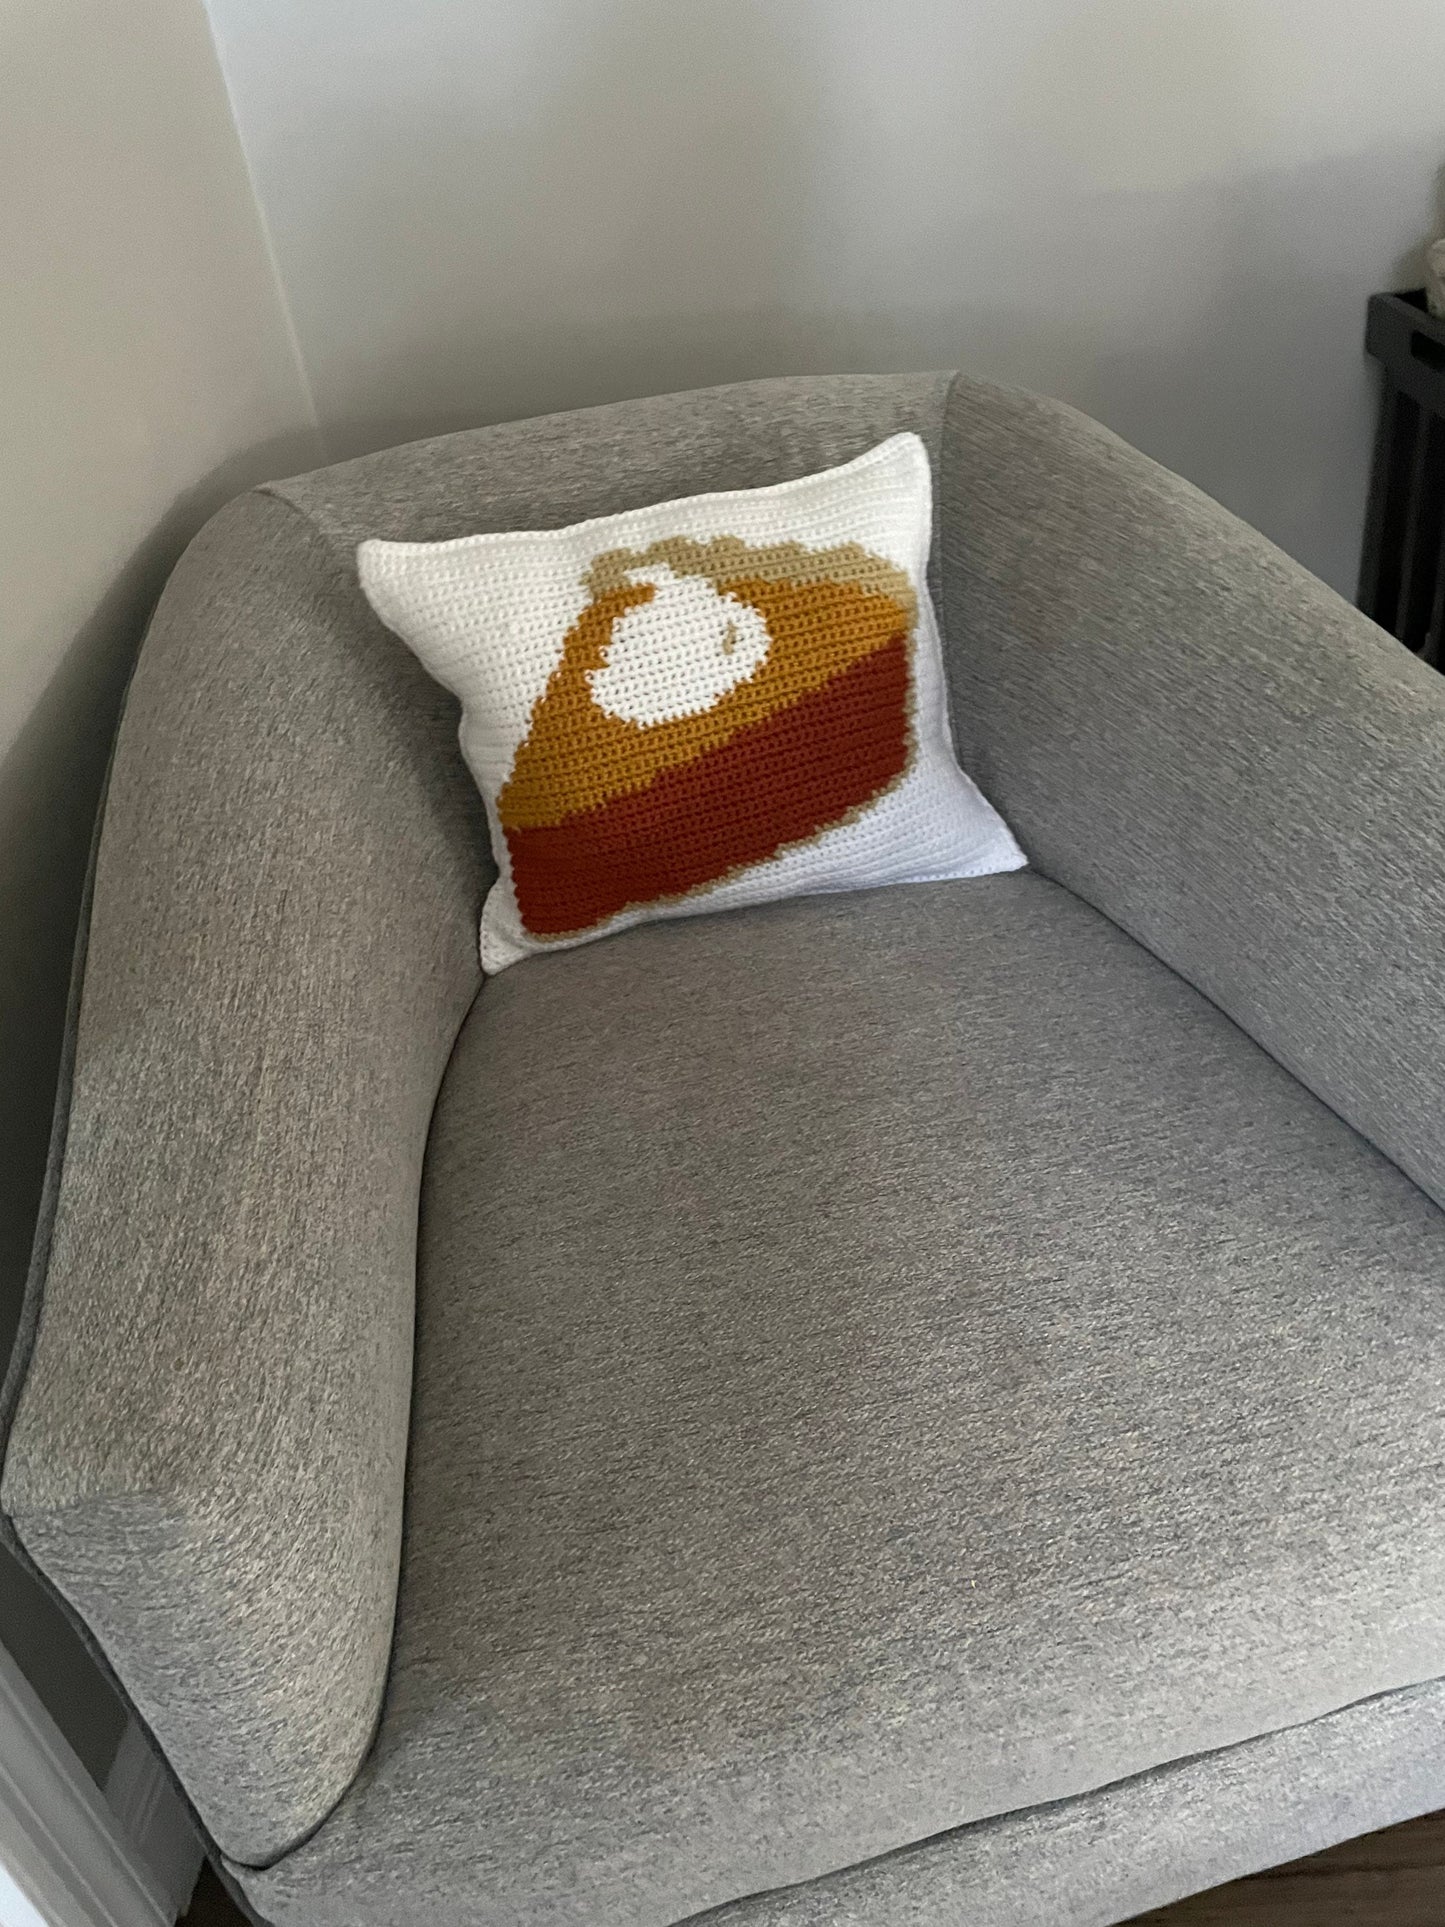 CROCHET PATTERN- Pumpkin Pie Colorwork Crochet Pillow Pattern, Pie Pillow, Thanksgiving Crochet Pillow